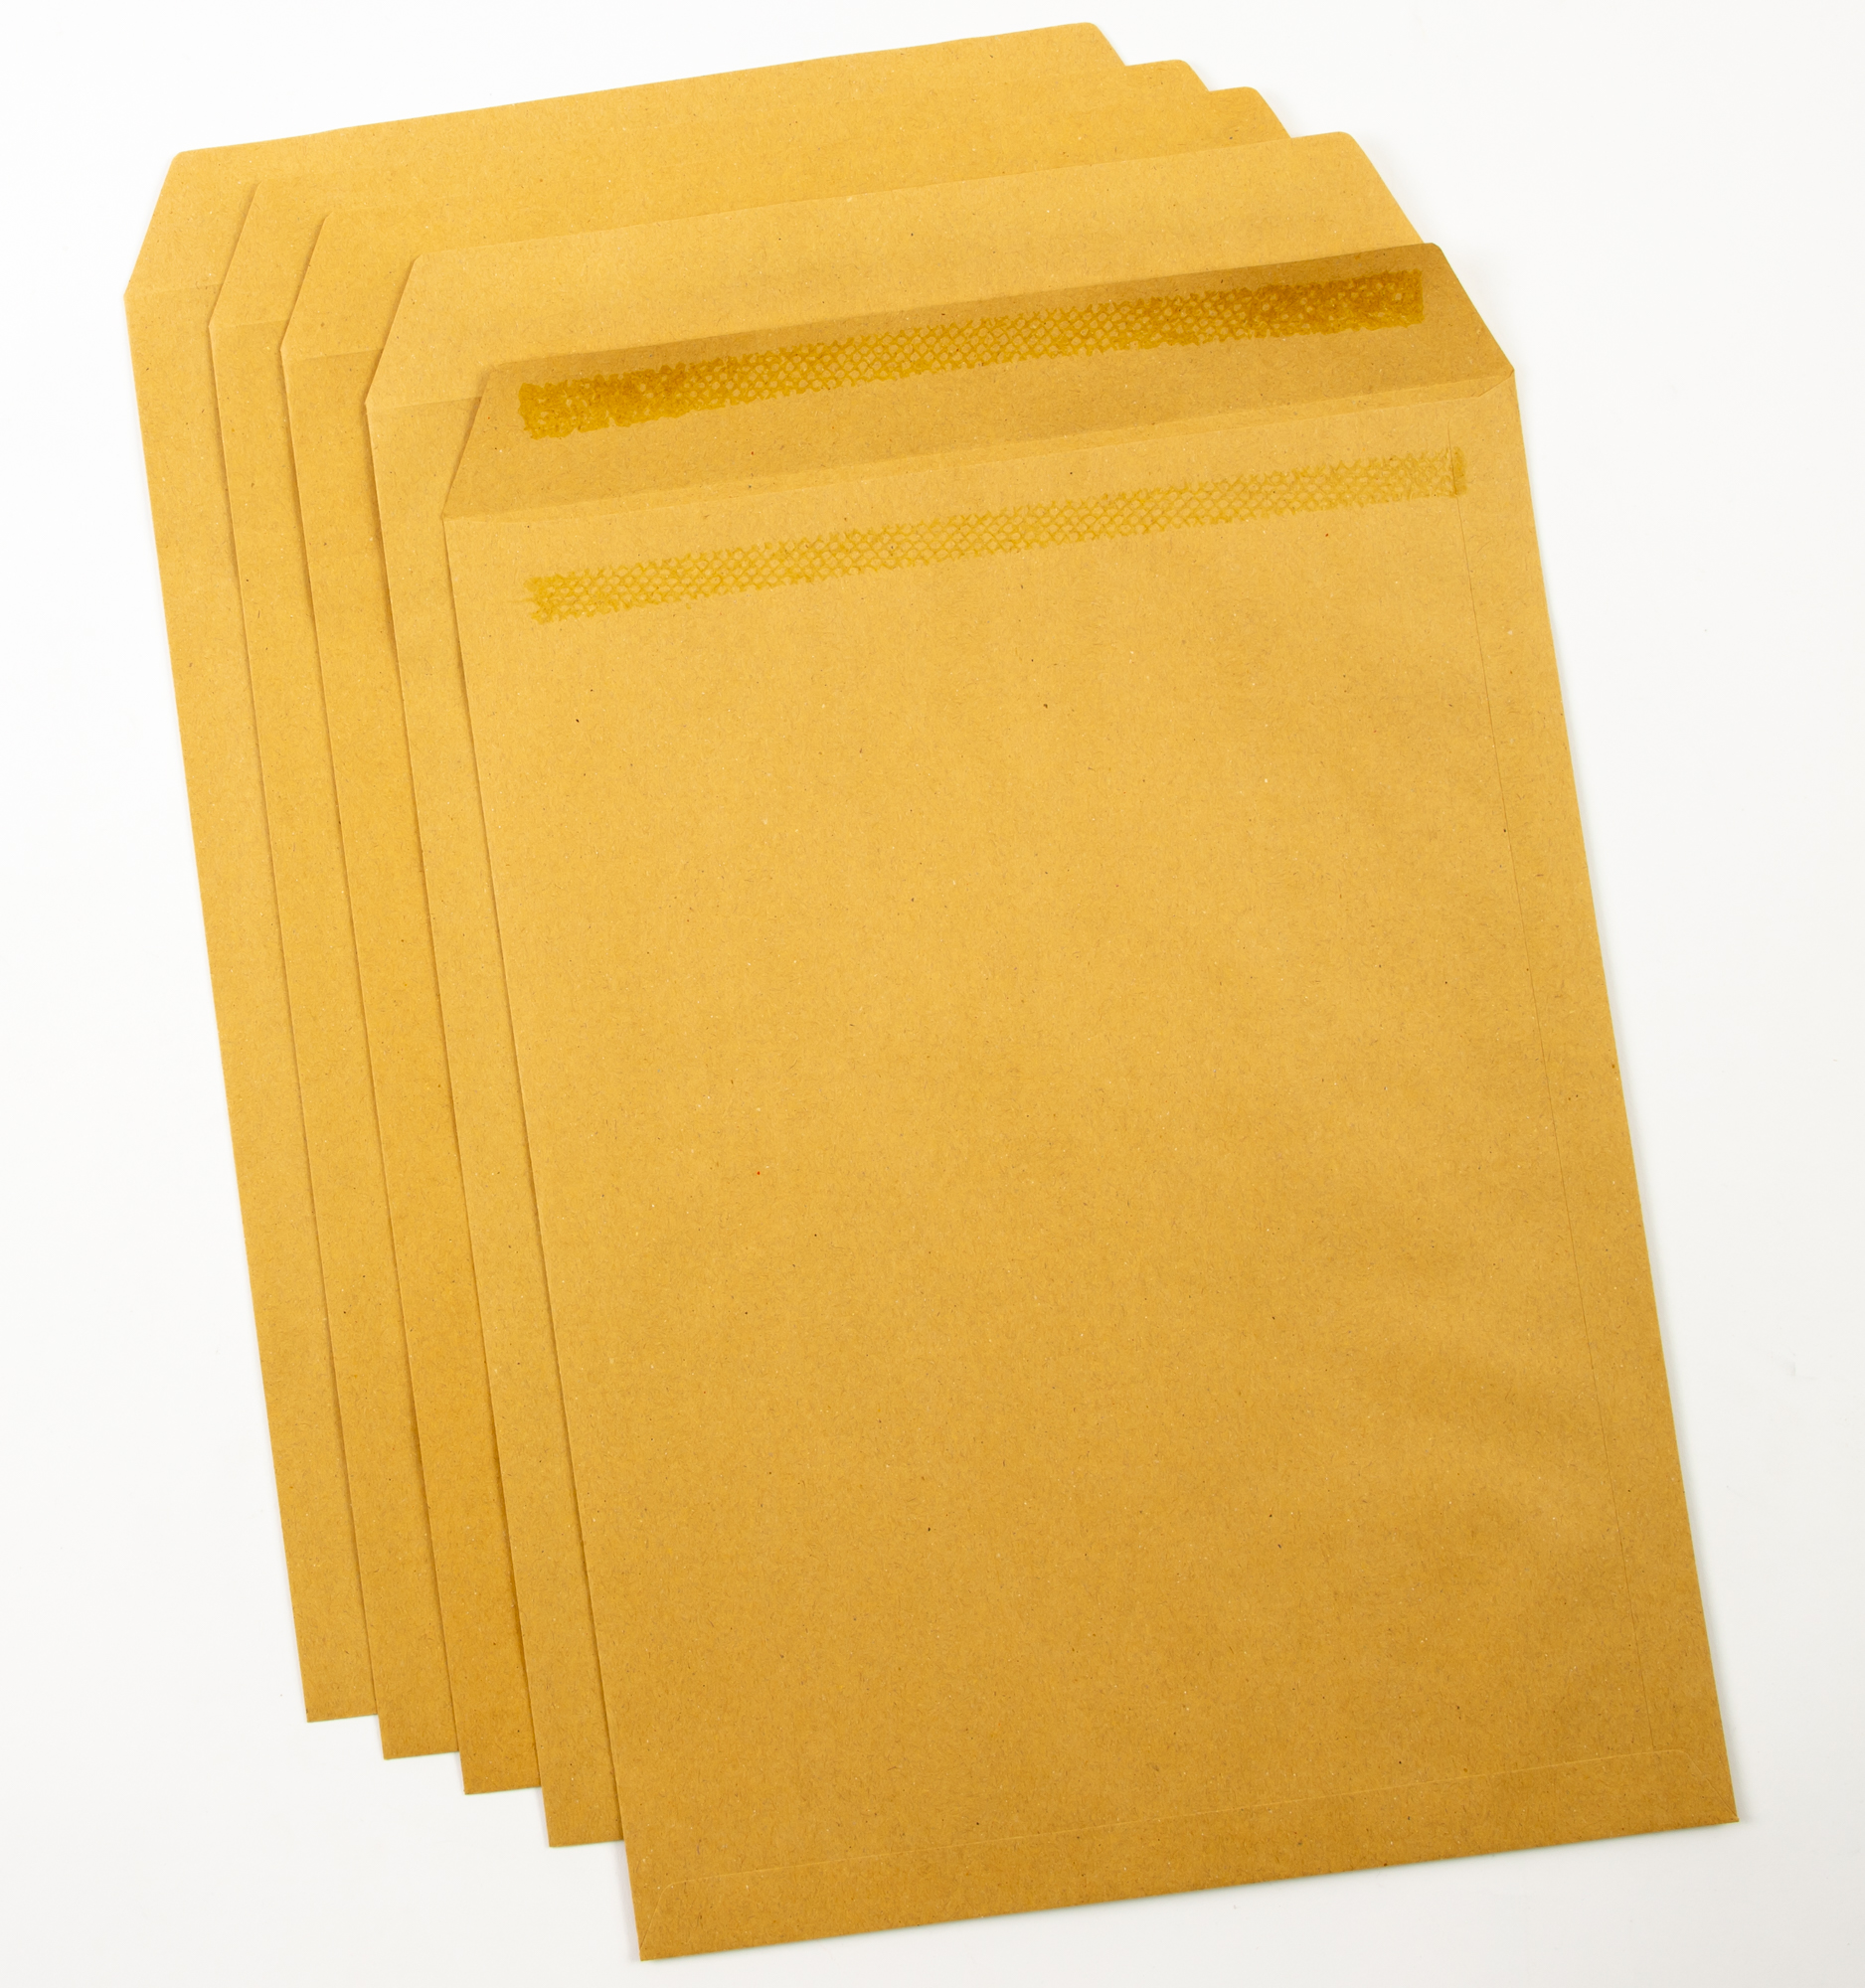 Envelope Manilla Gummed Plain 406x306mm